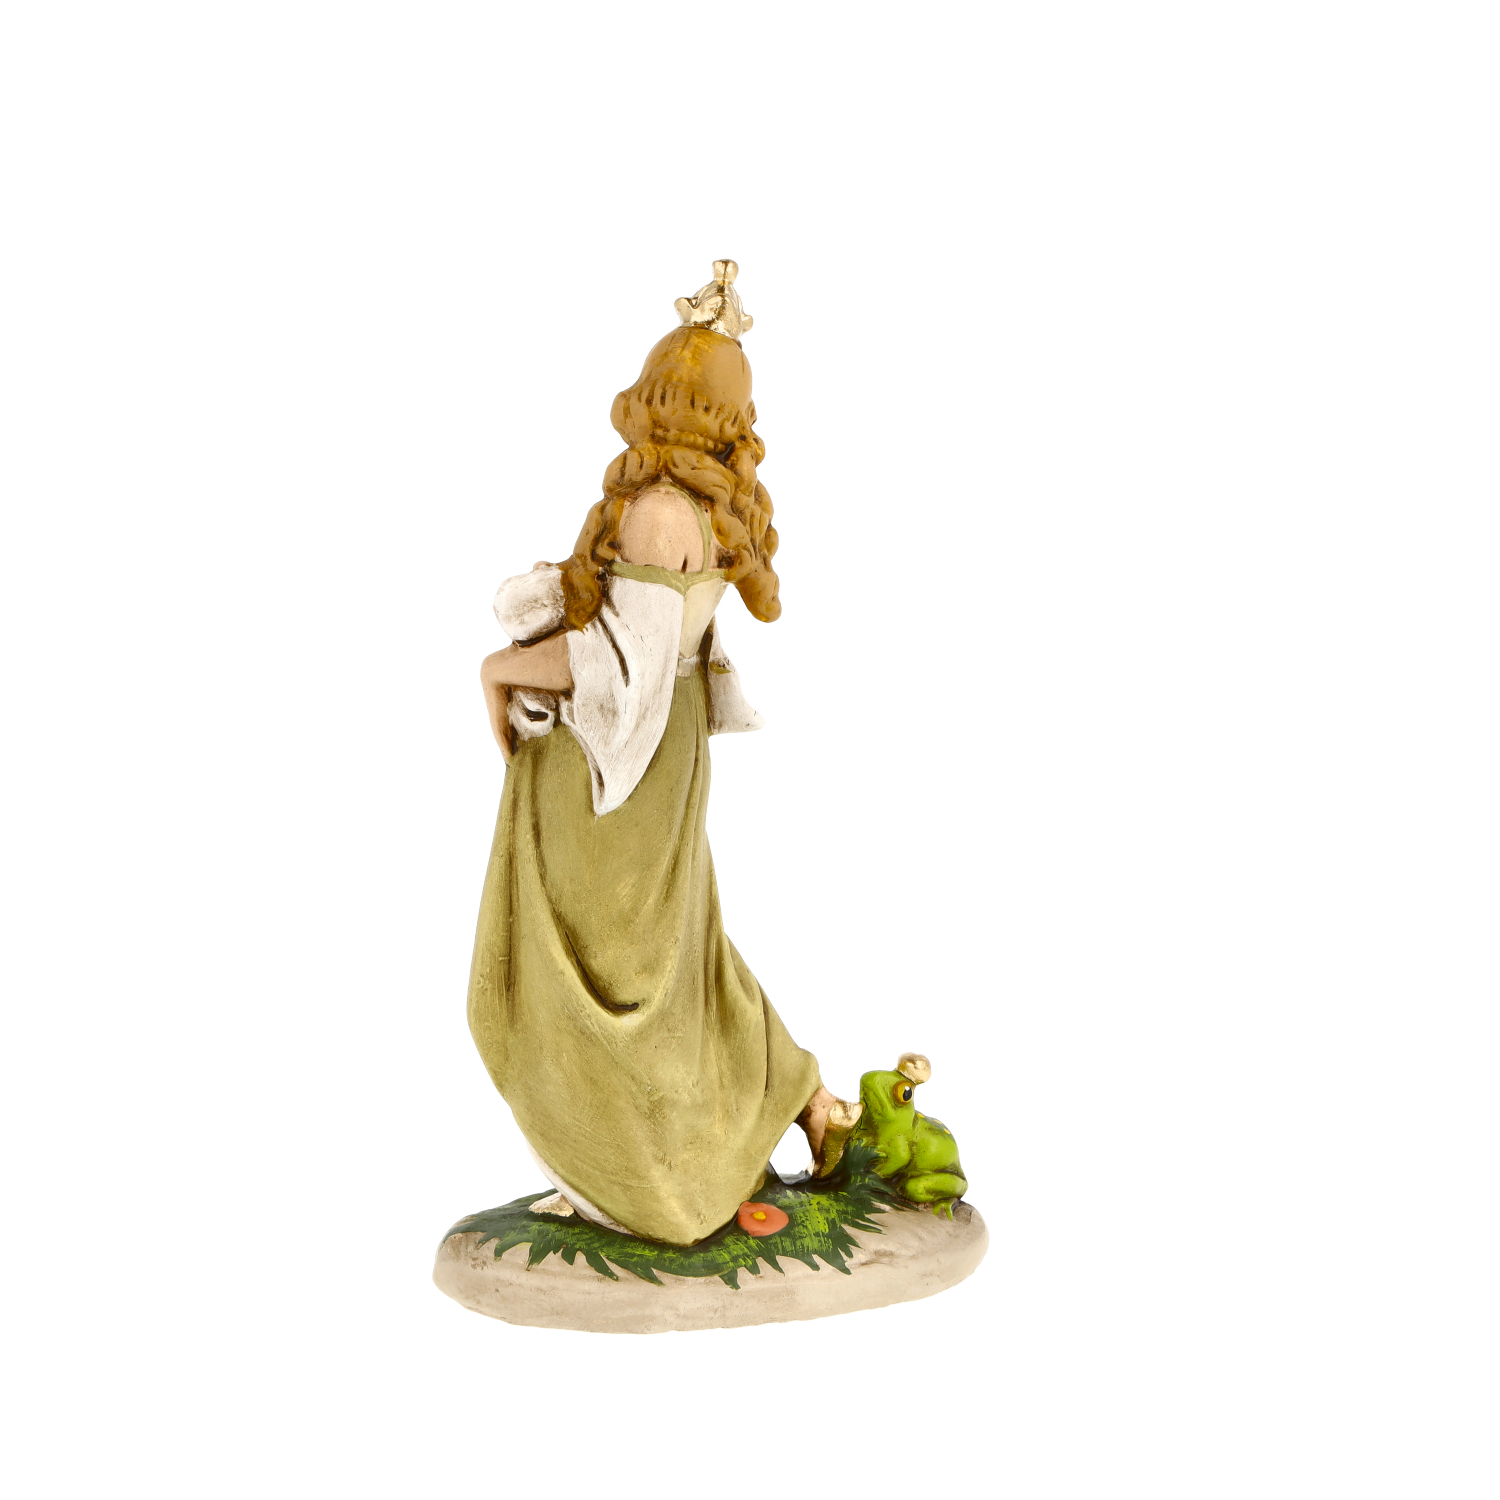 Prinzessin mit Frosch aus "Froschkönig" Märchenfigur, H = 14,5cm